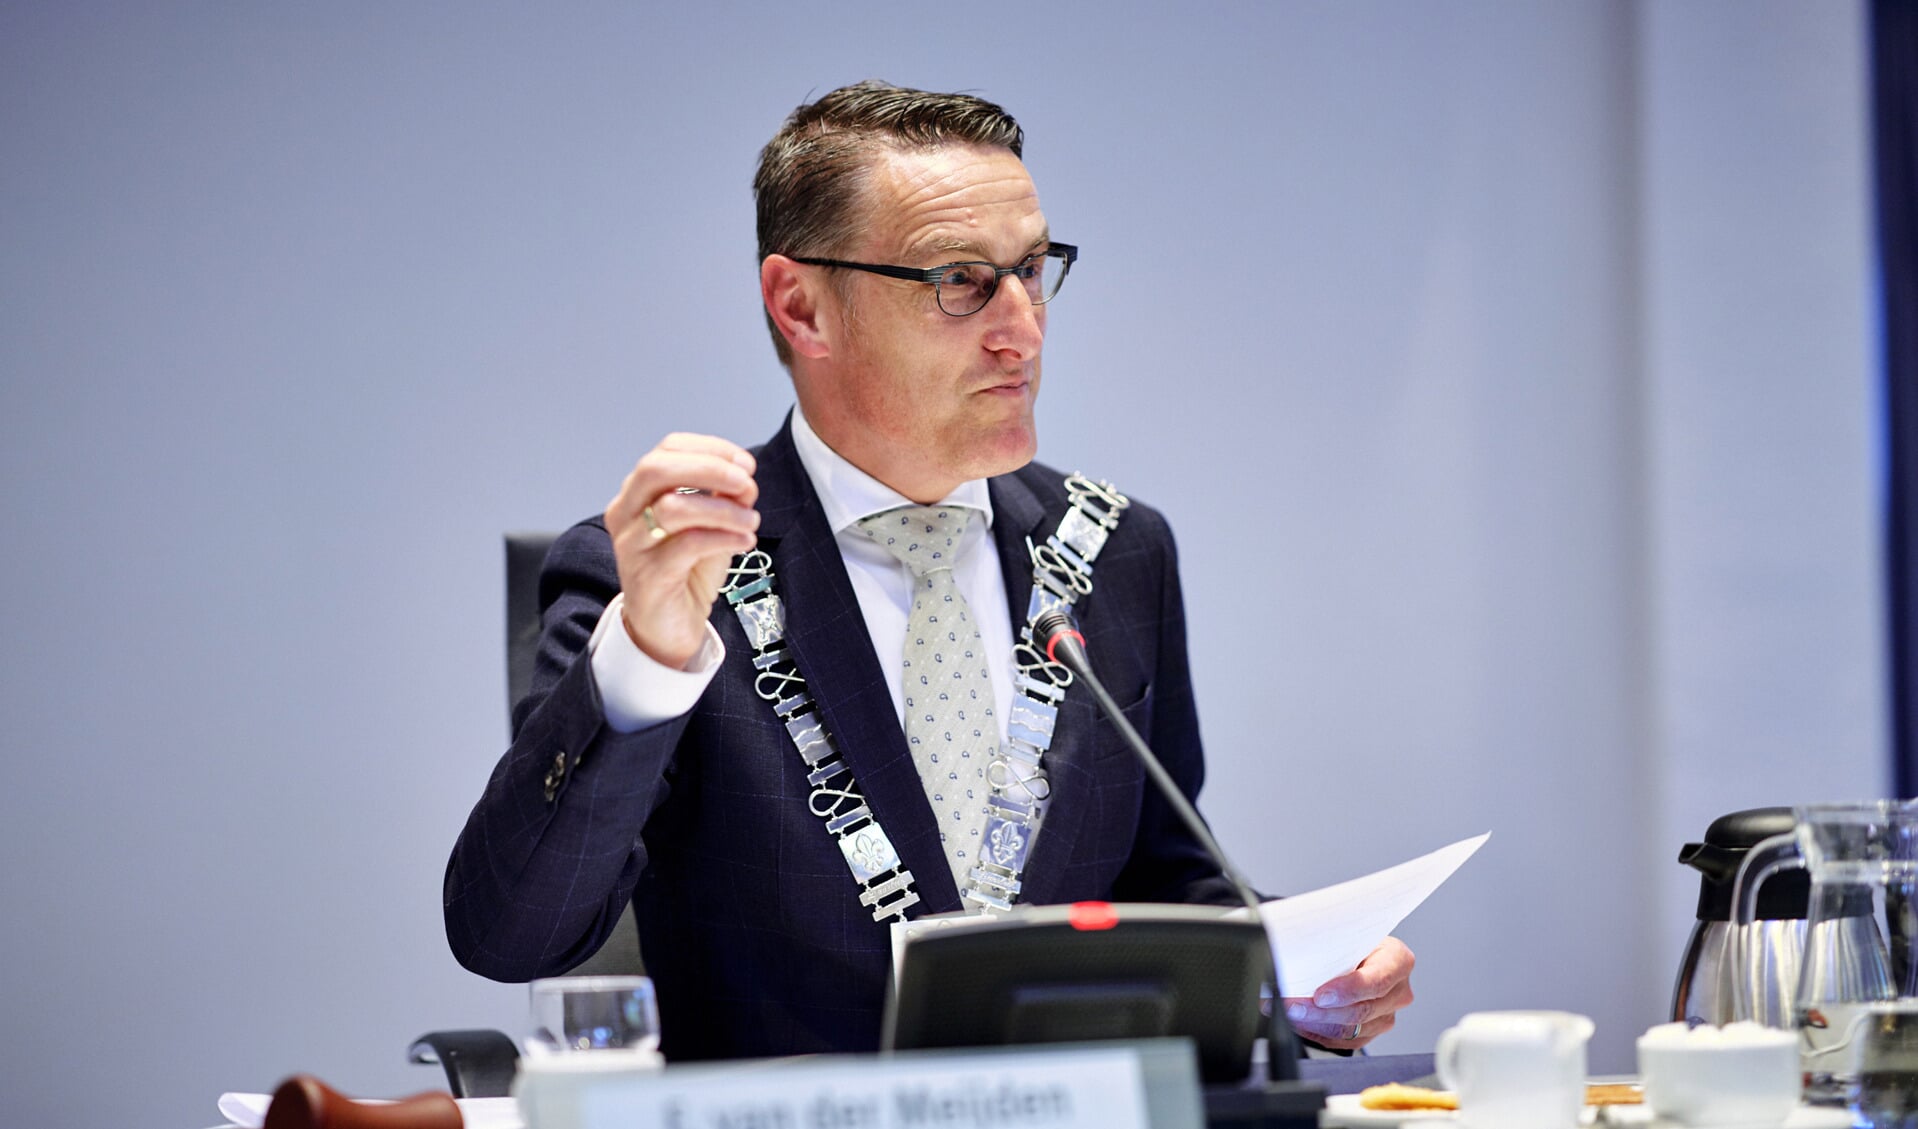 Burgemeester Frank van der Meijden